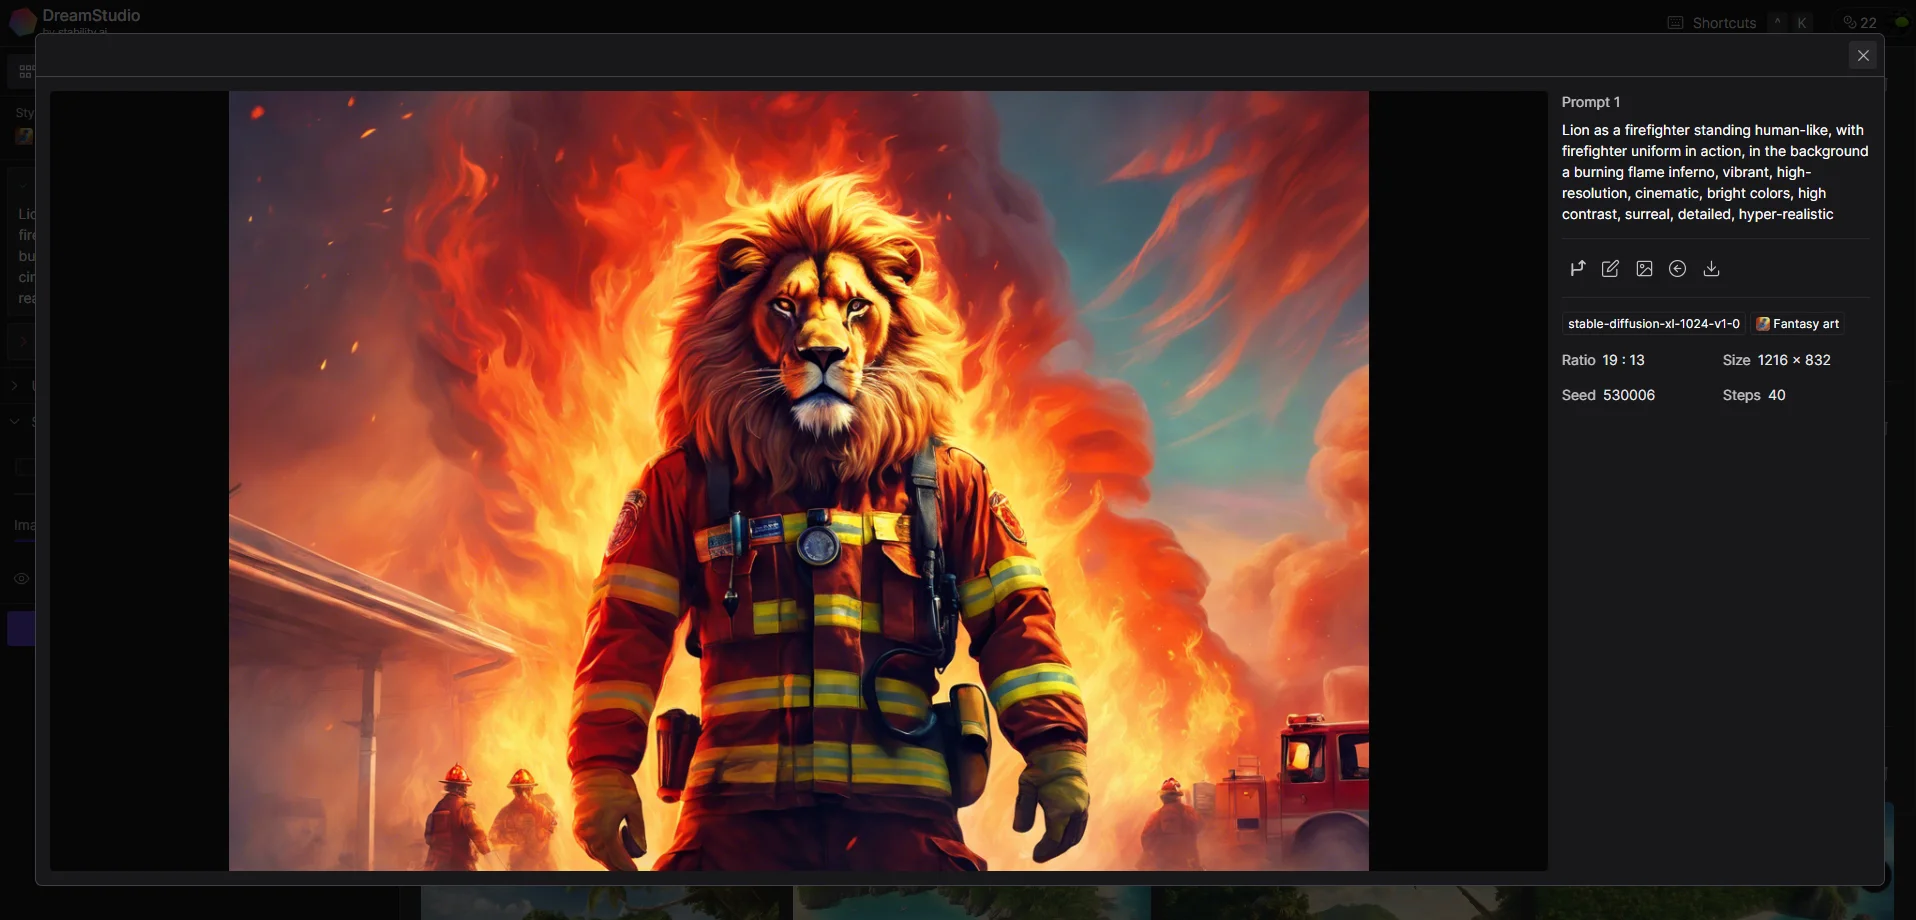 Löwe als Feuermann mit hohem Kontrast und lebendigen Farben.